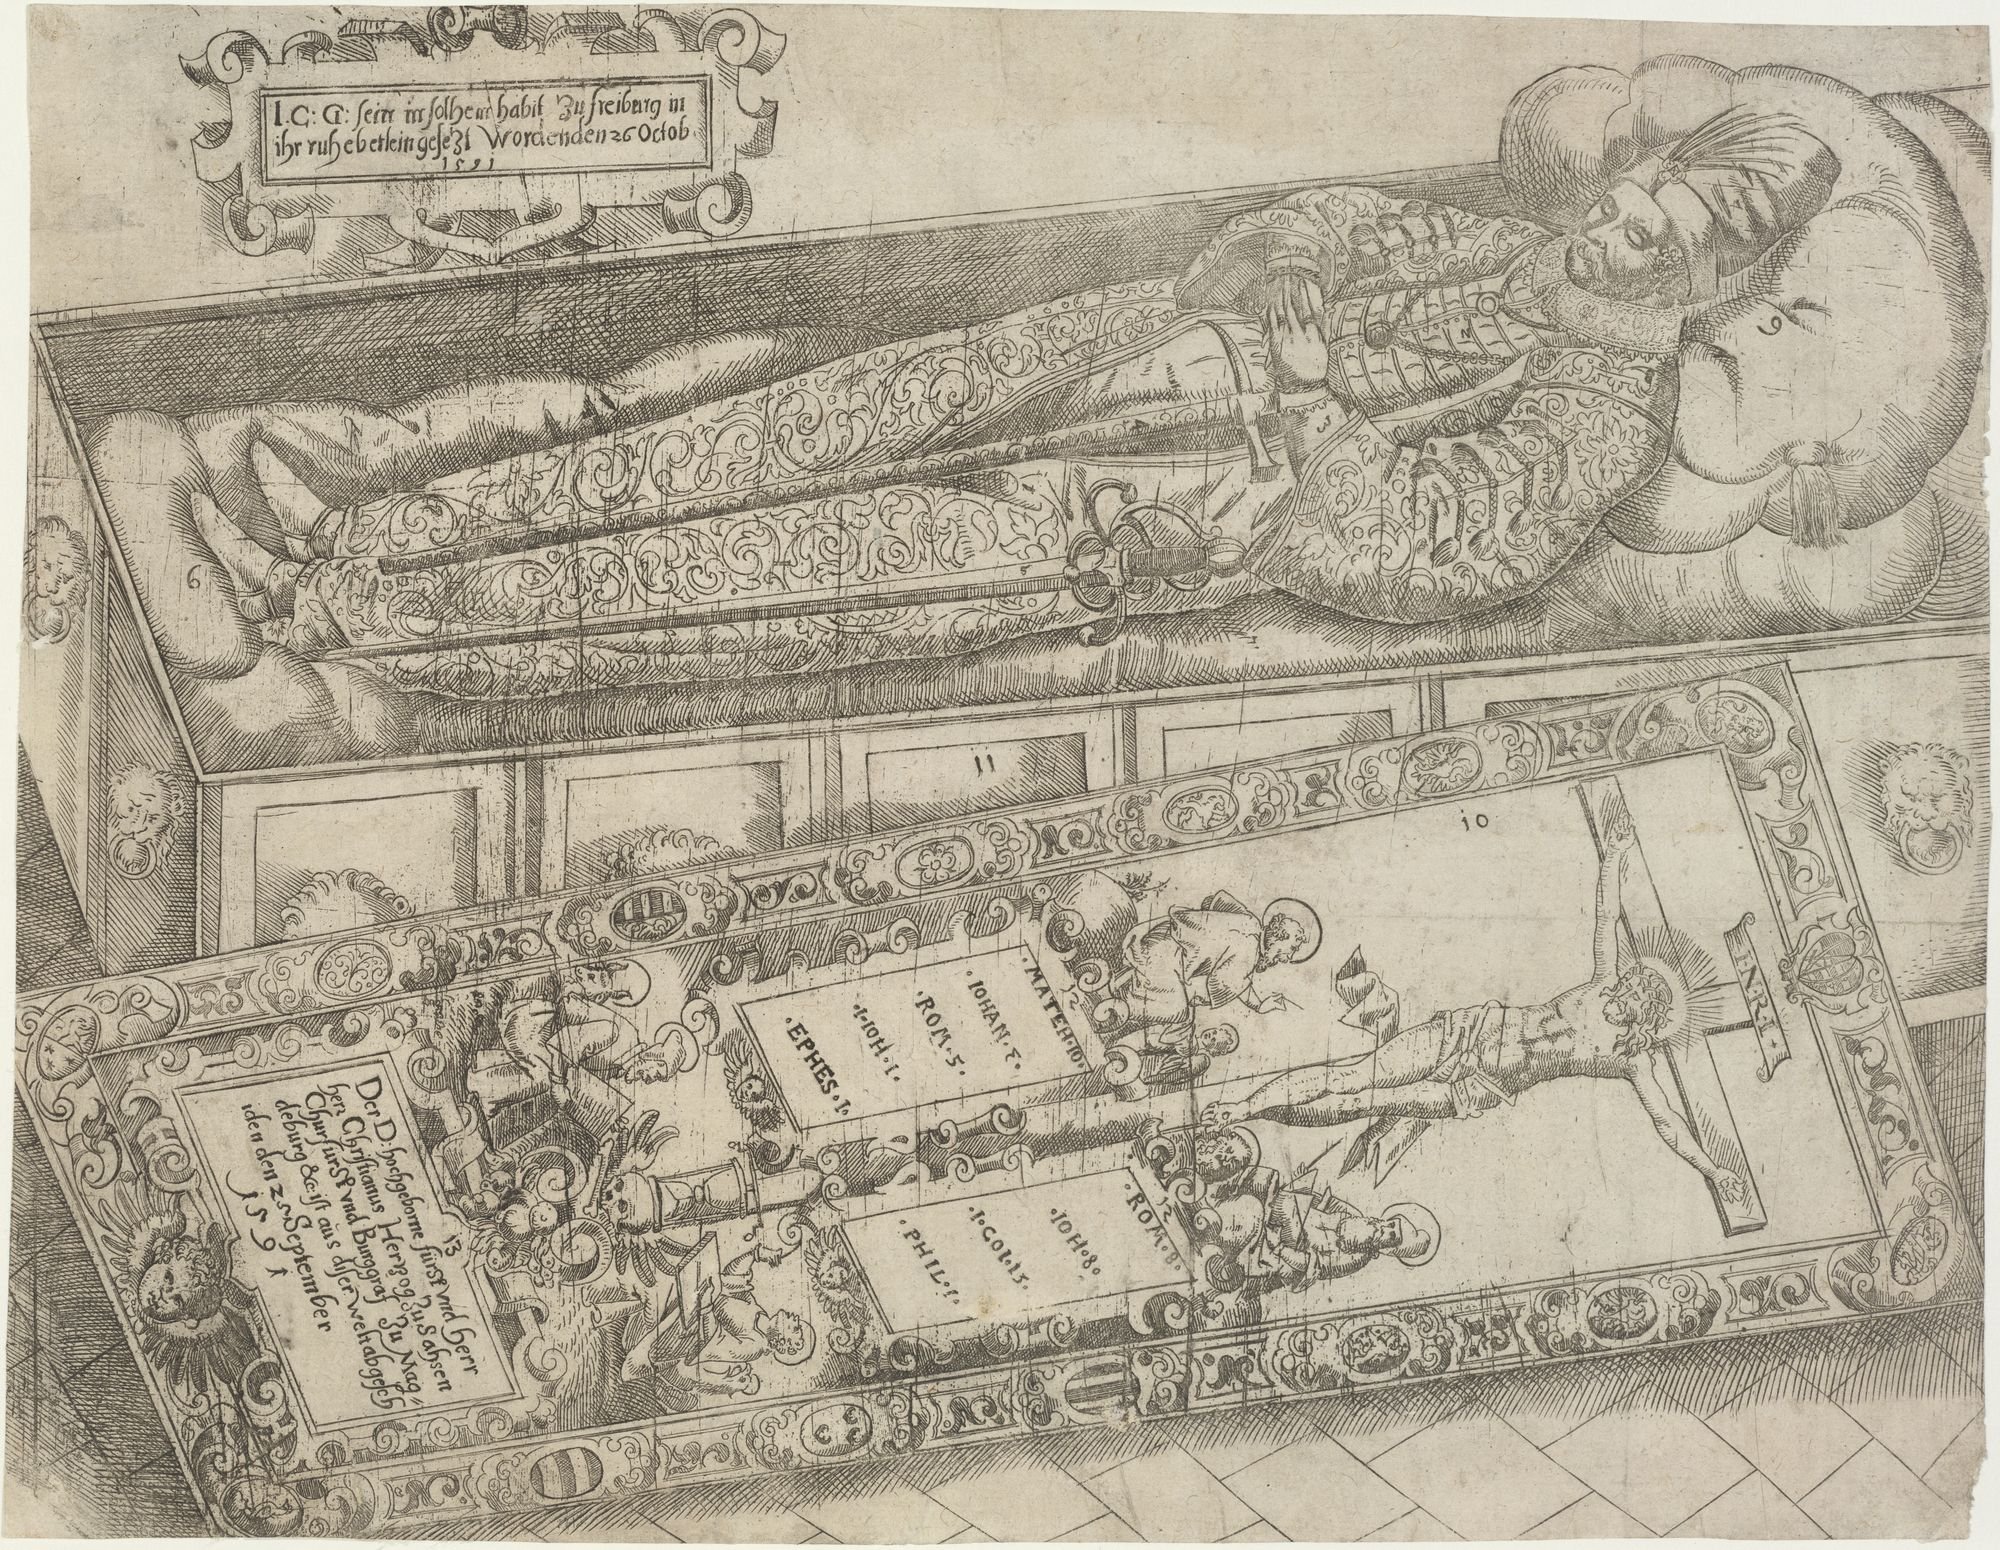 I. C: G: sein in solchem habit zu freiberg in/ ihr ruhebetlein gesetz worden den 26 Octob/ 1591 (Kulturstiftung Sachsen-Anhalt Public Domain Mark)